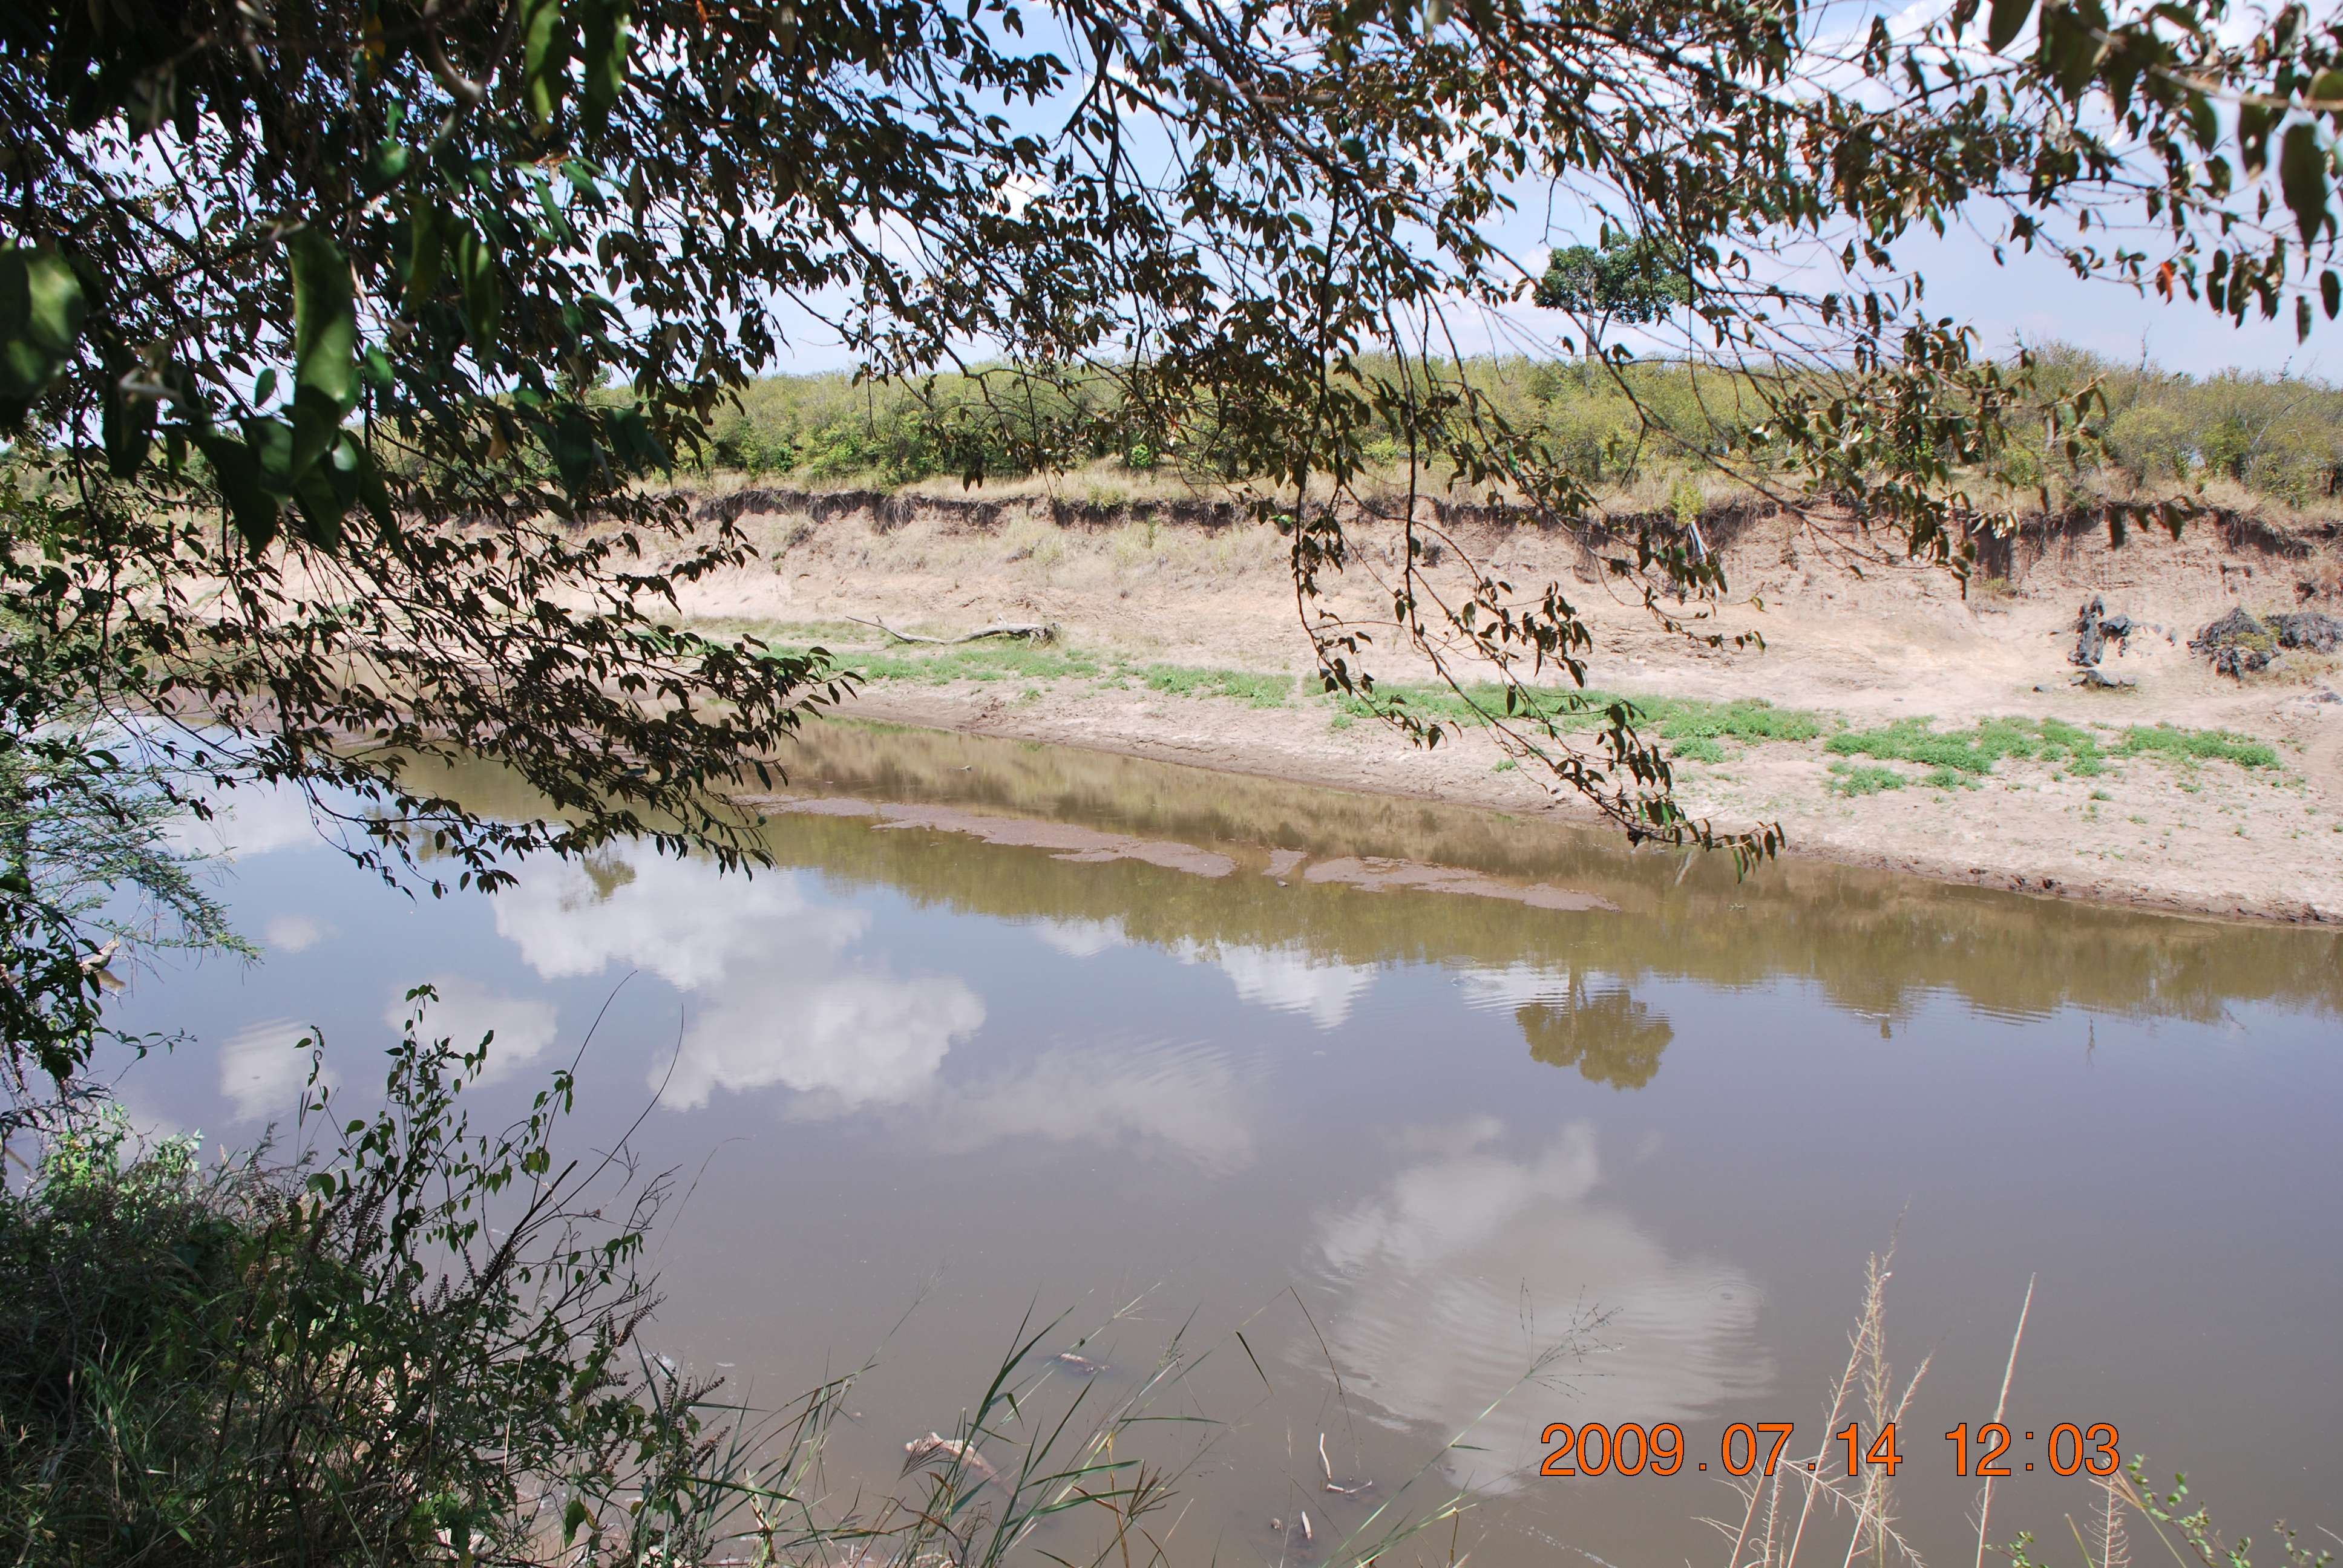 Kenia una experiencia inolvidable - Blogs de Kenia - El cruce del río Mara. (7)